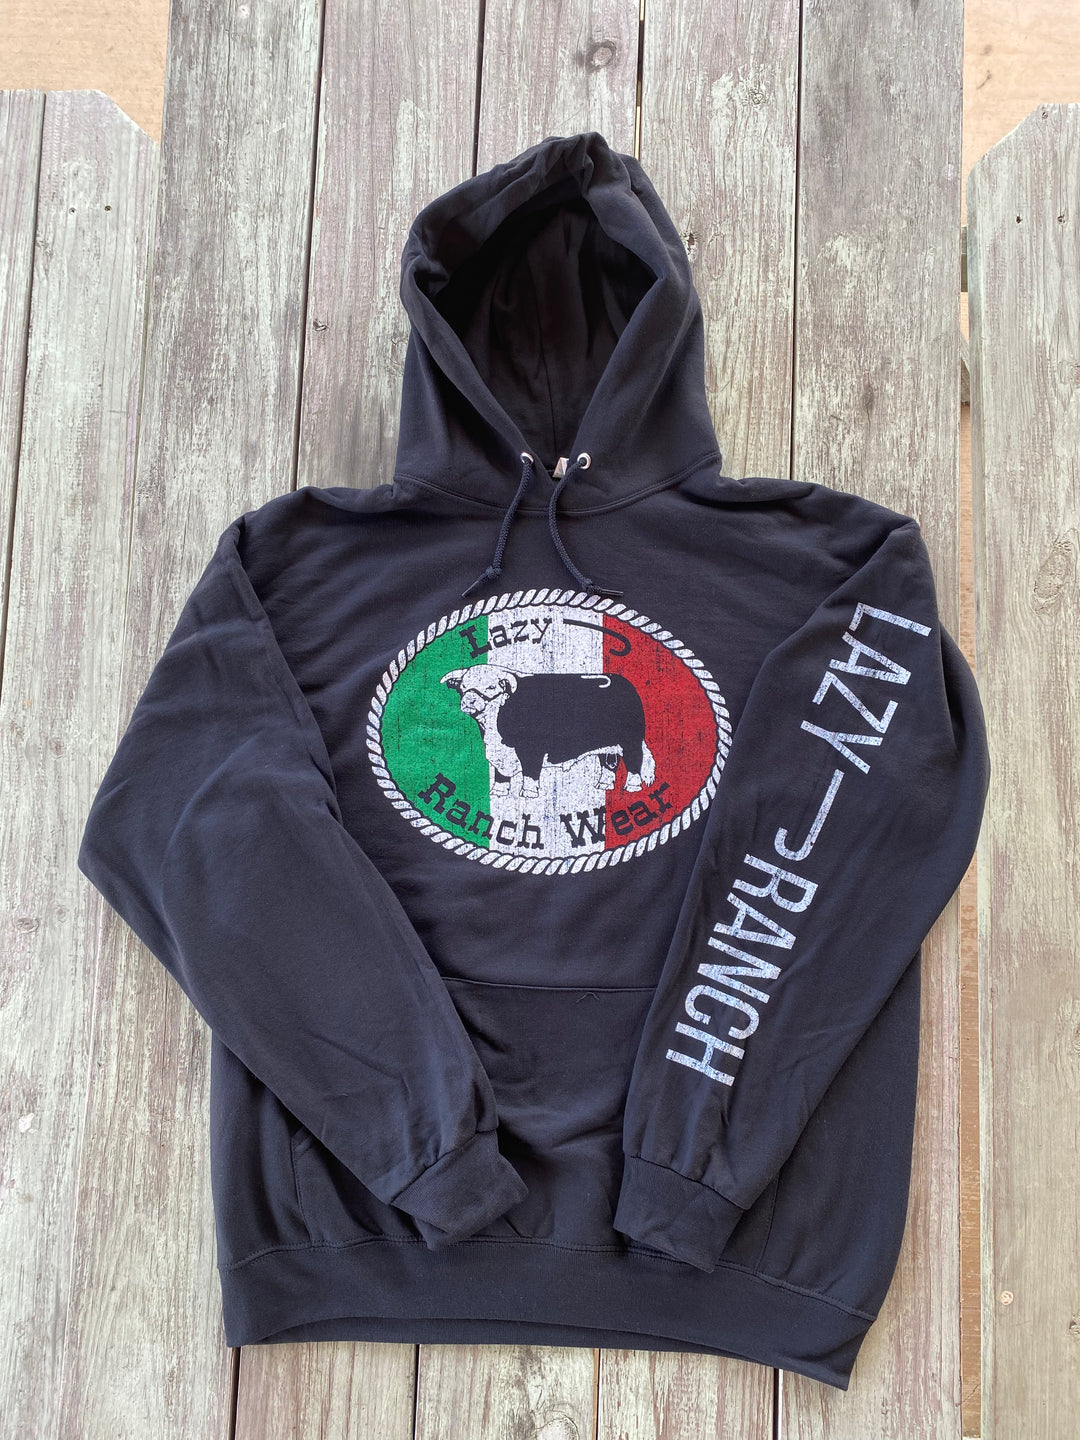 Lazy J Ranch Wear Original Buckle Mexico Elevation Core Fleece Pullover Hoodie - Black